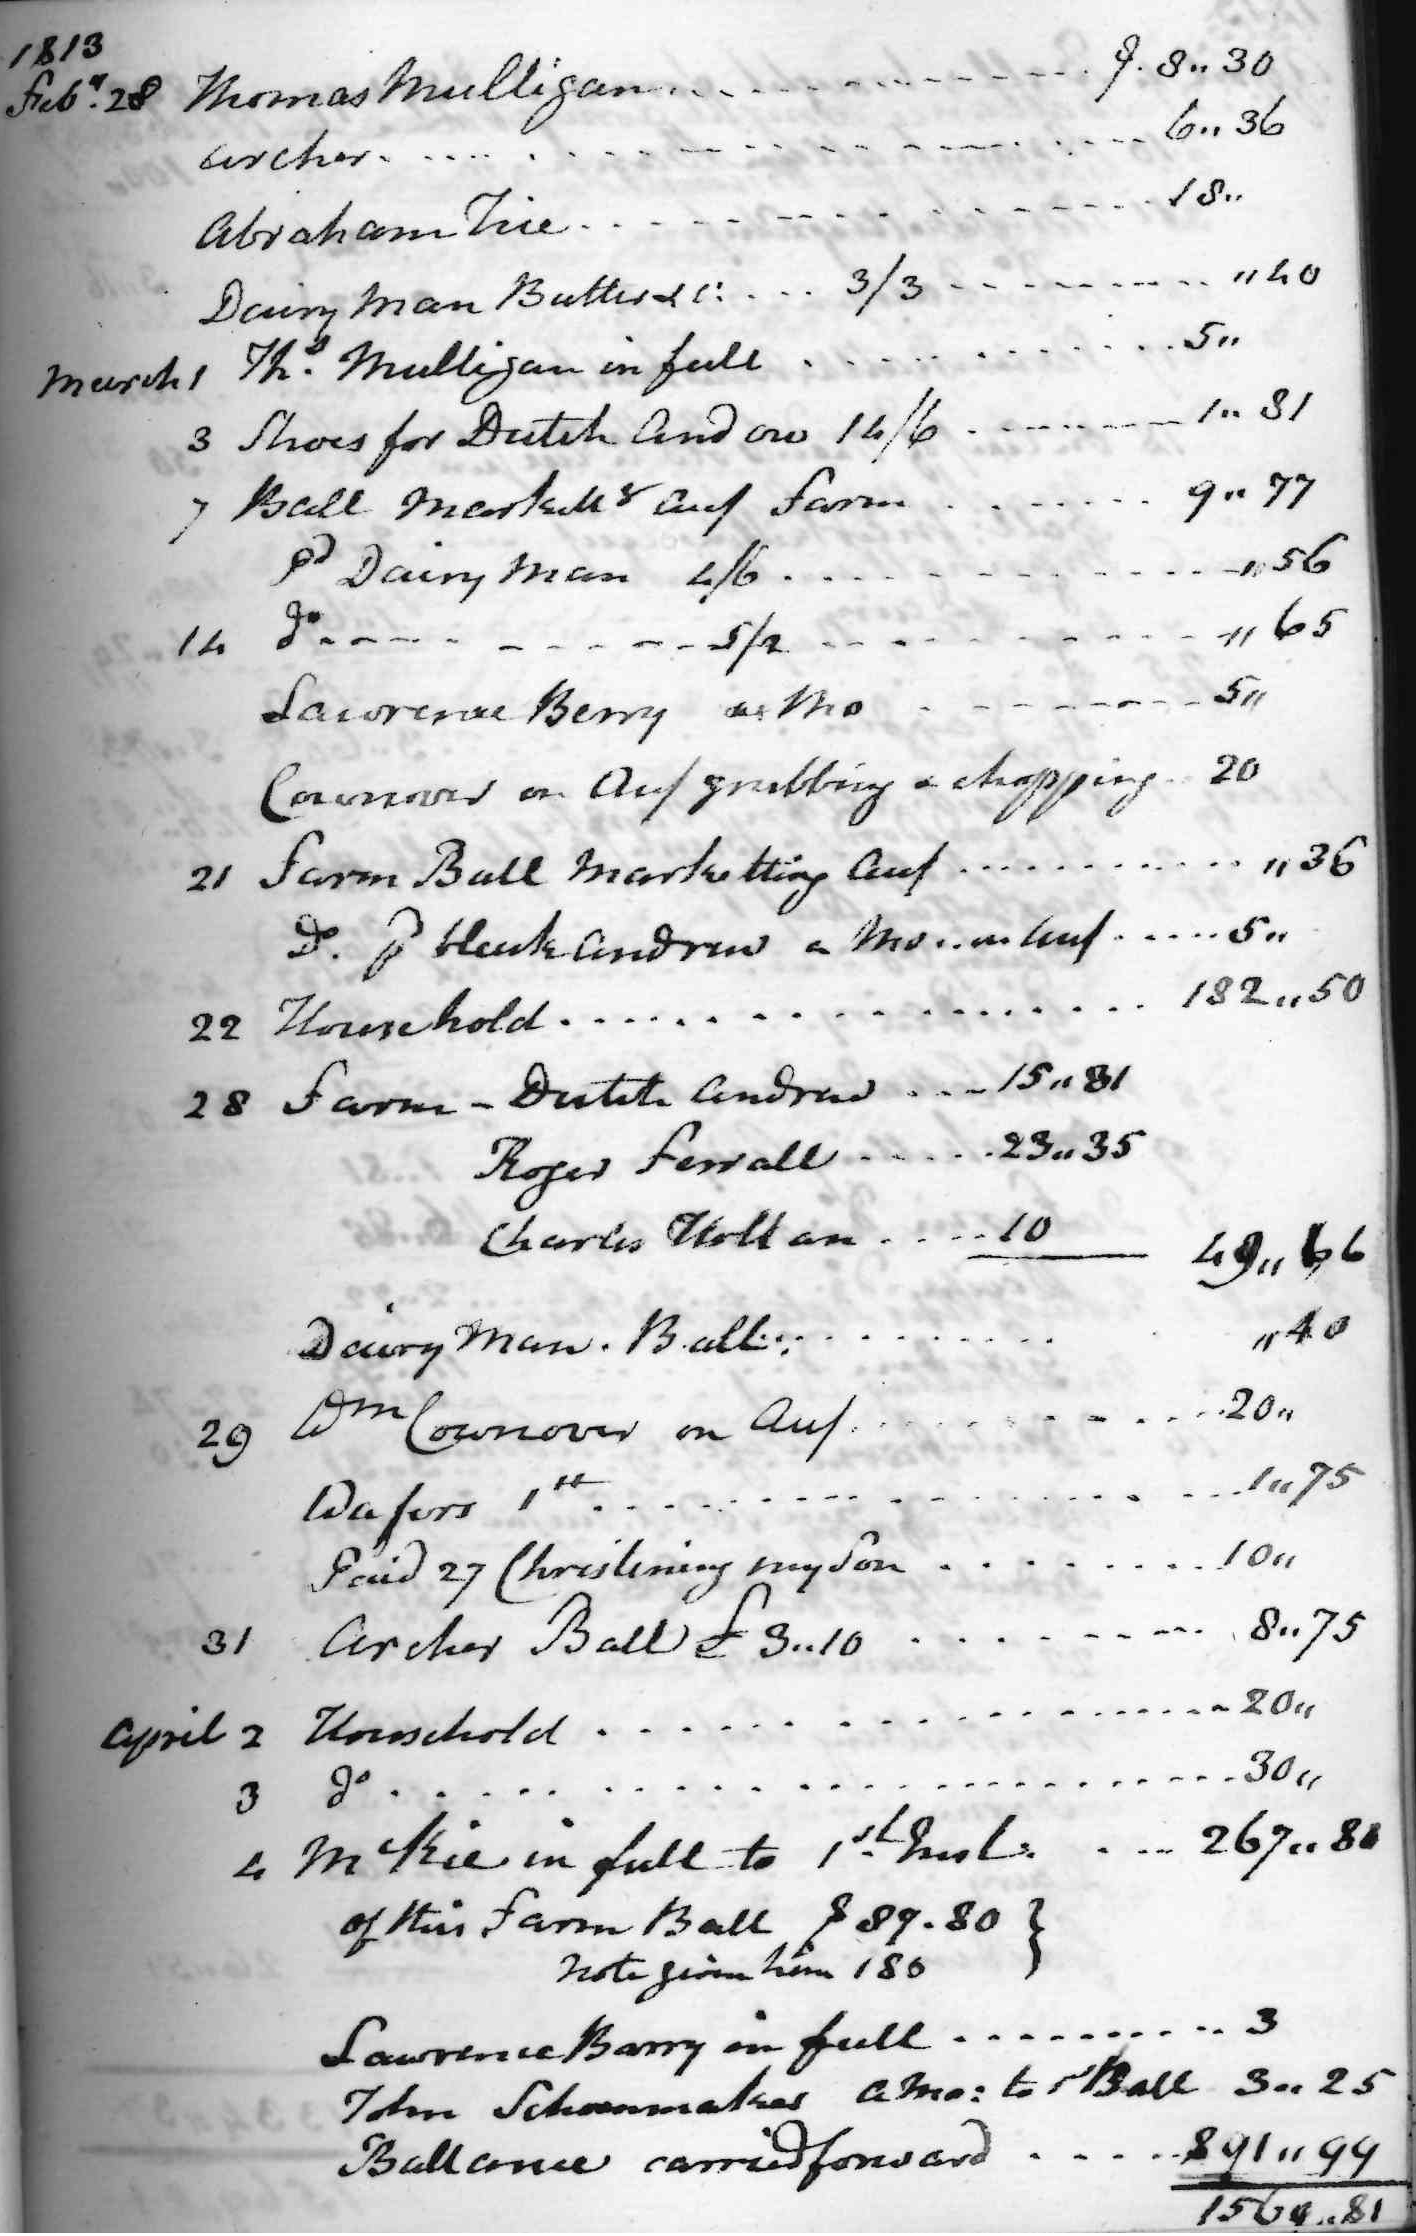 Gouverneur Morris Cash Book, folio 16, right side